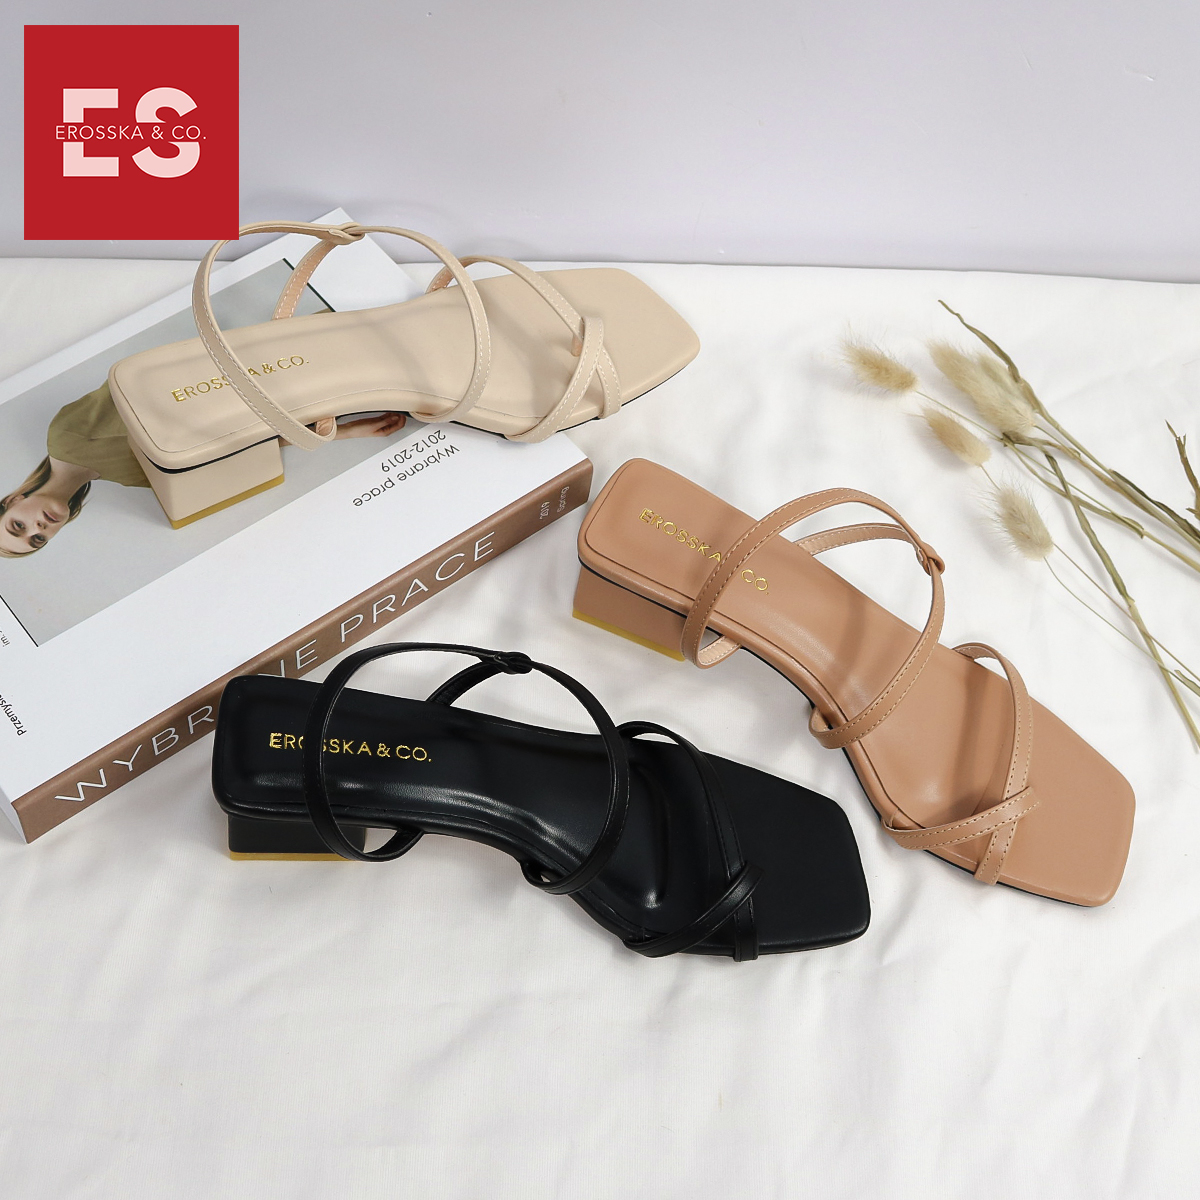 Giày sandal cao gót nữ Erosska kiểu dáng xỏ ngón dây mảnh thời trang cao 5cm màu nude - EB024